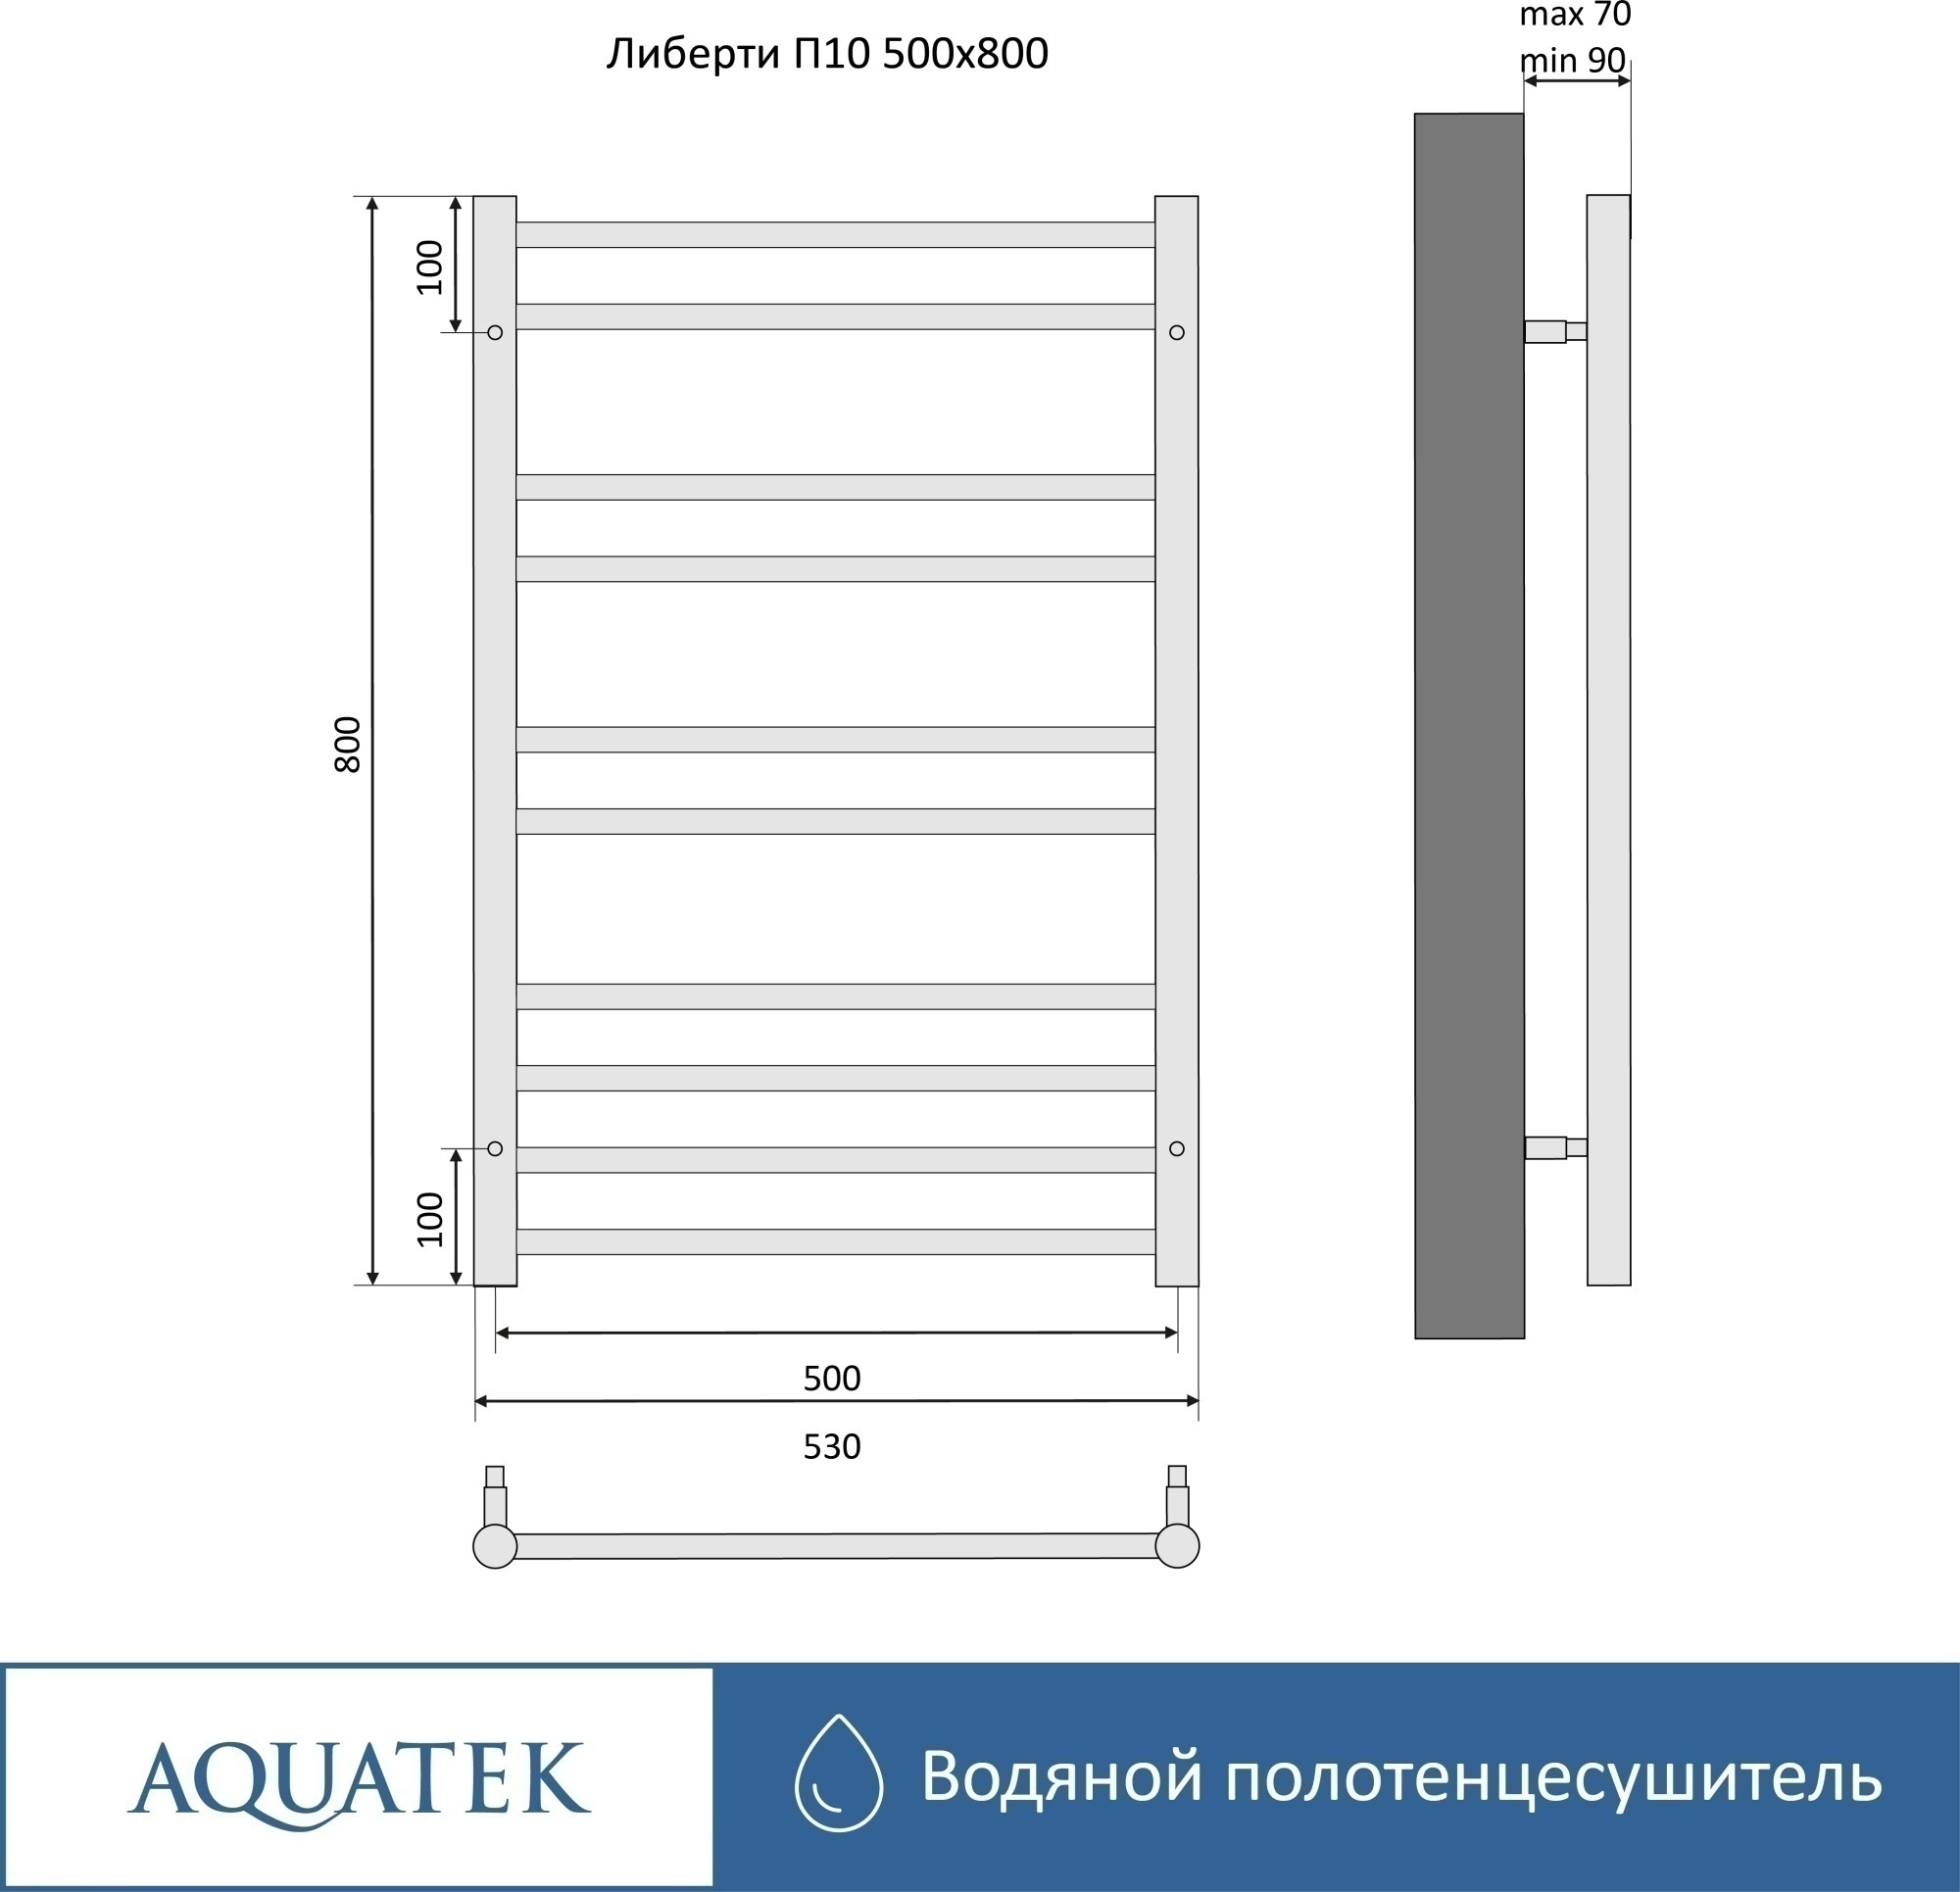 Полотенцесушитель водяной Aquatek Либерти П10 50x80 AQ RR1080CH